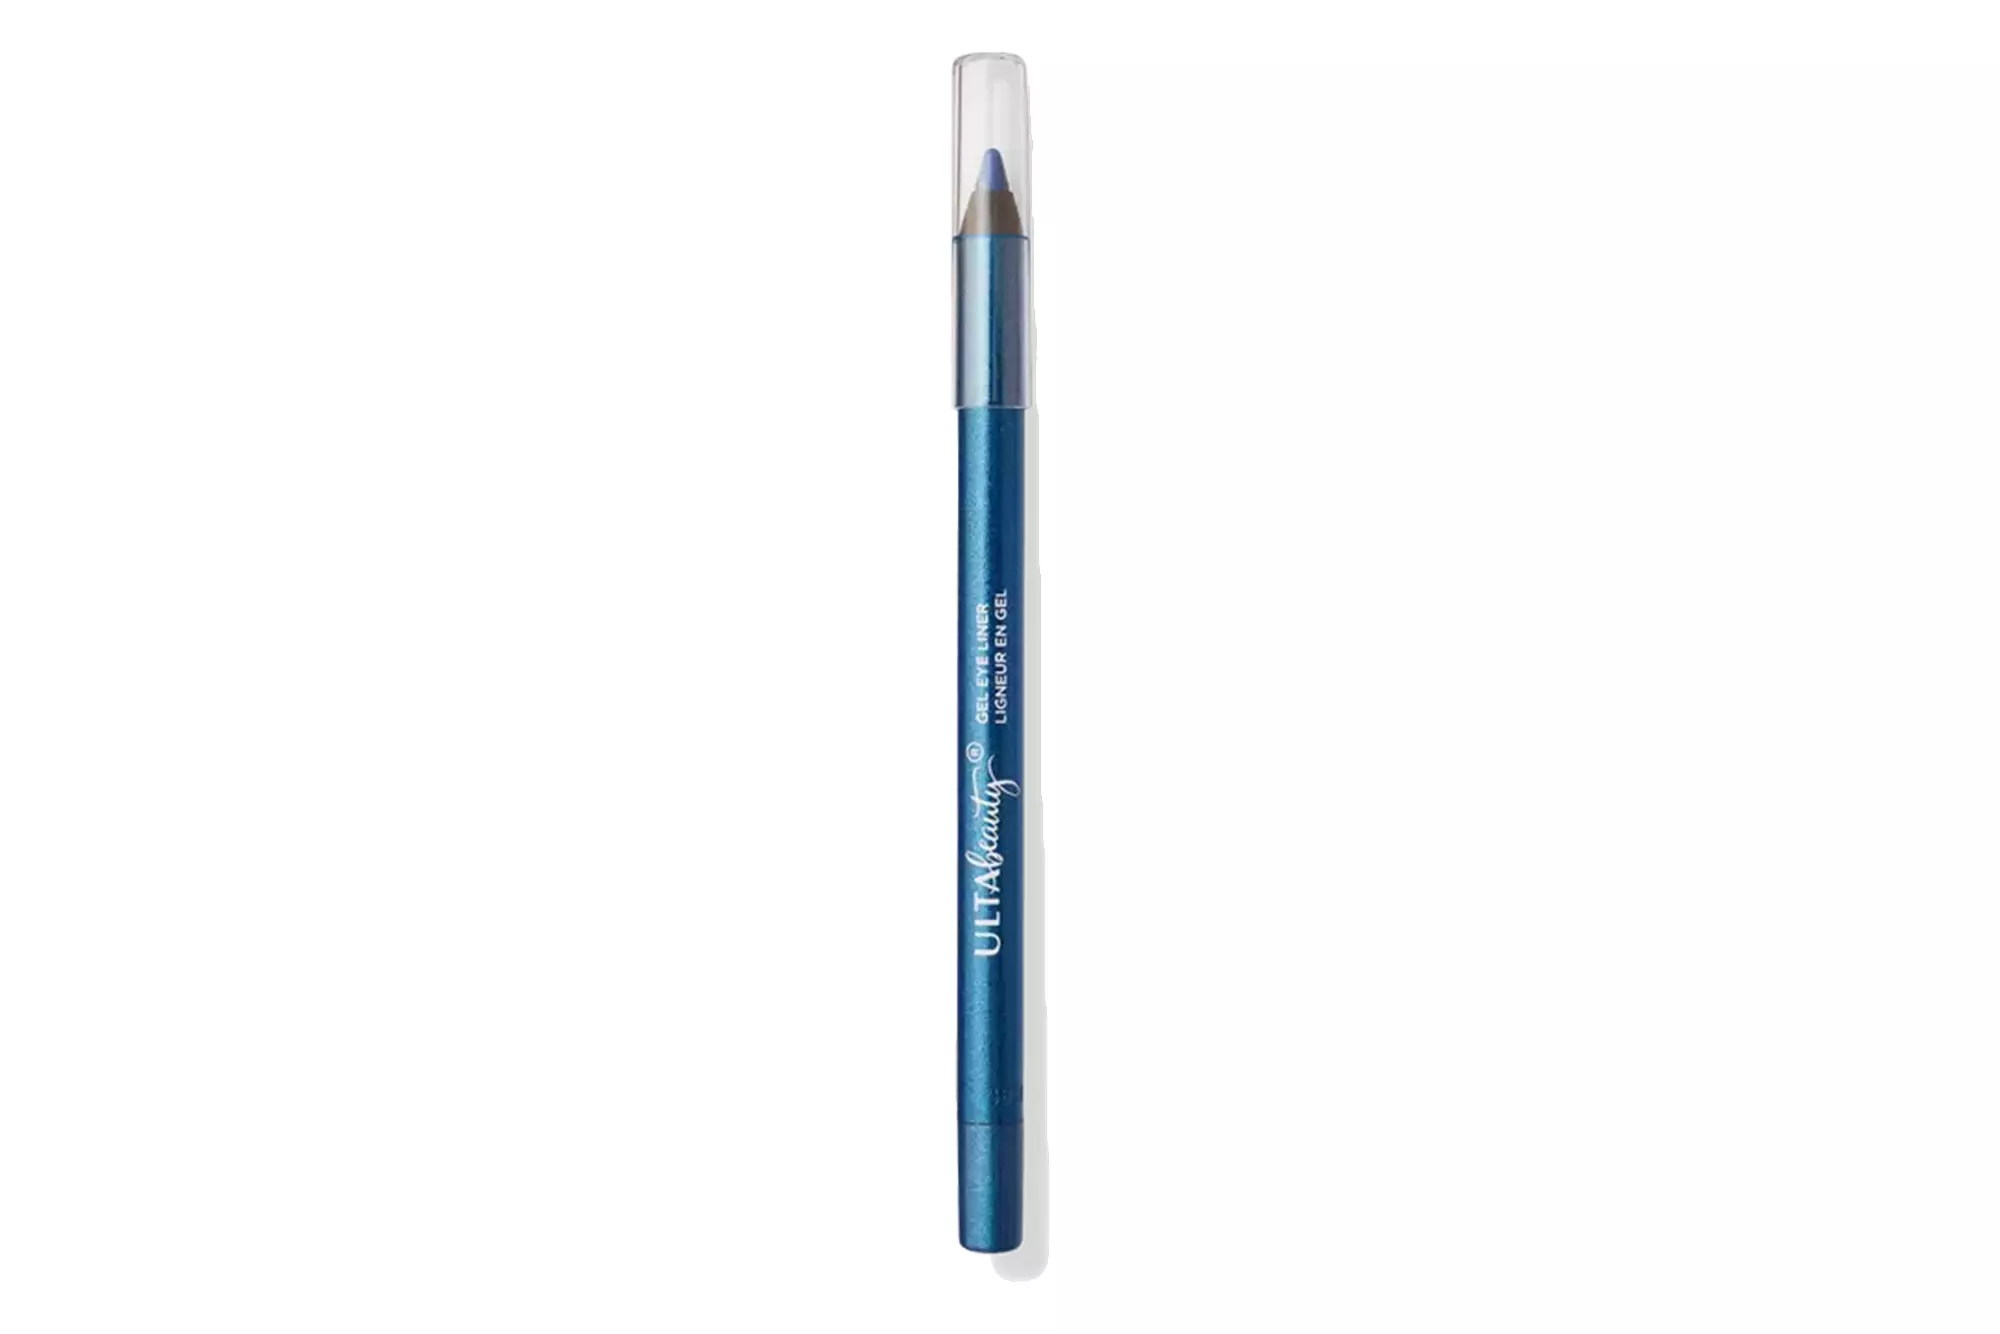 Ulta Beauty Gel Eyeliner Pencil